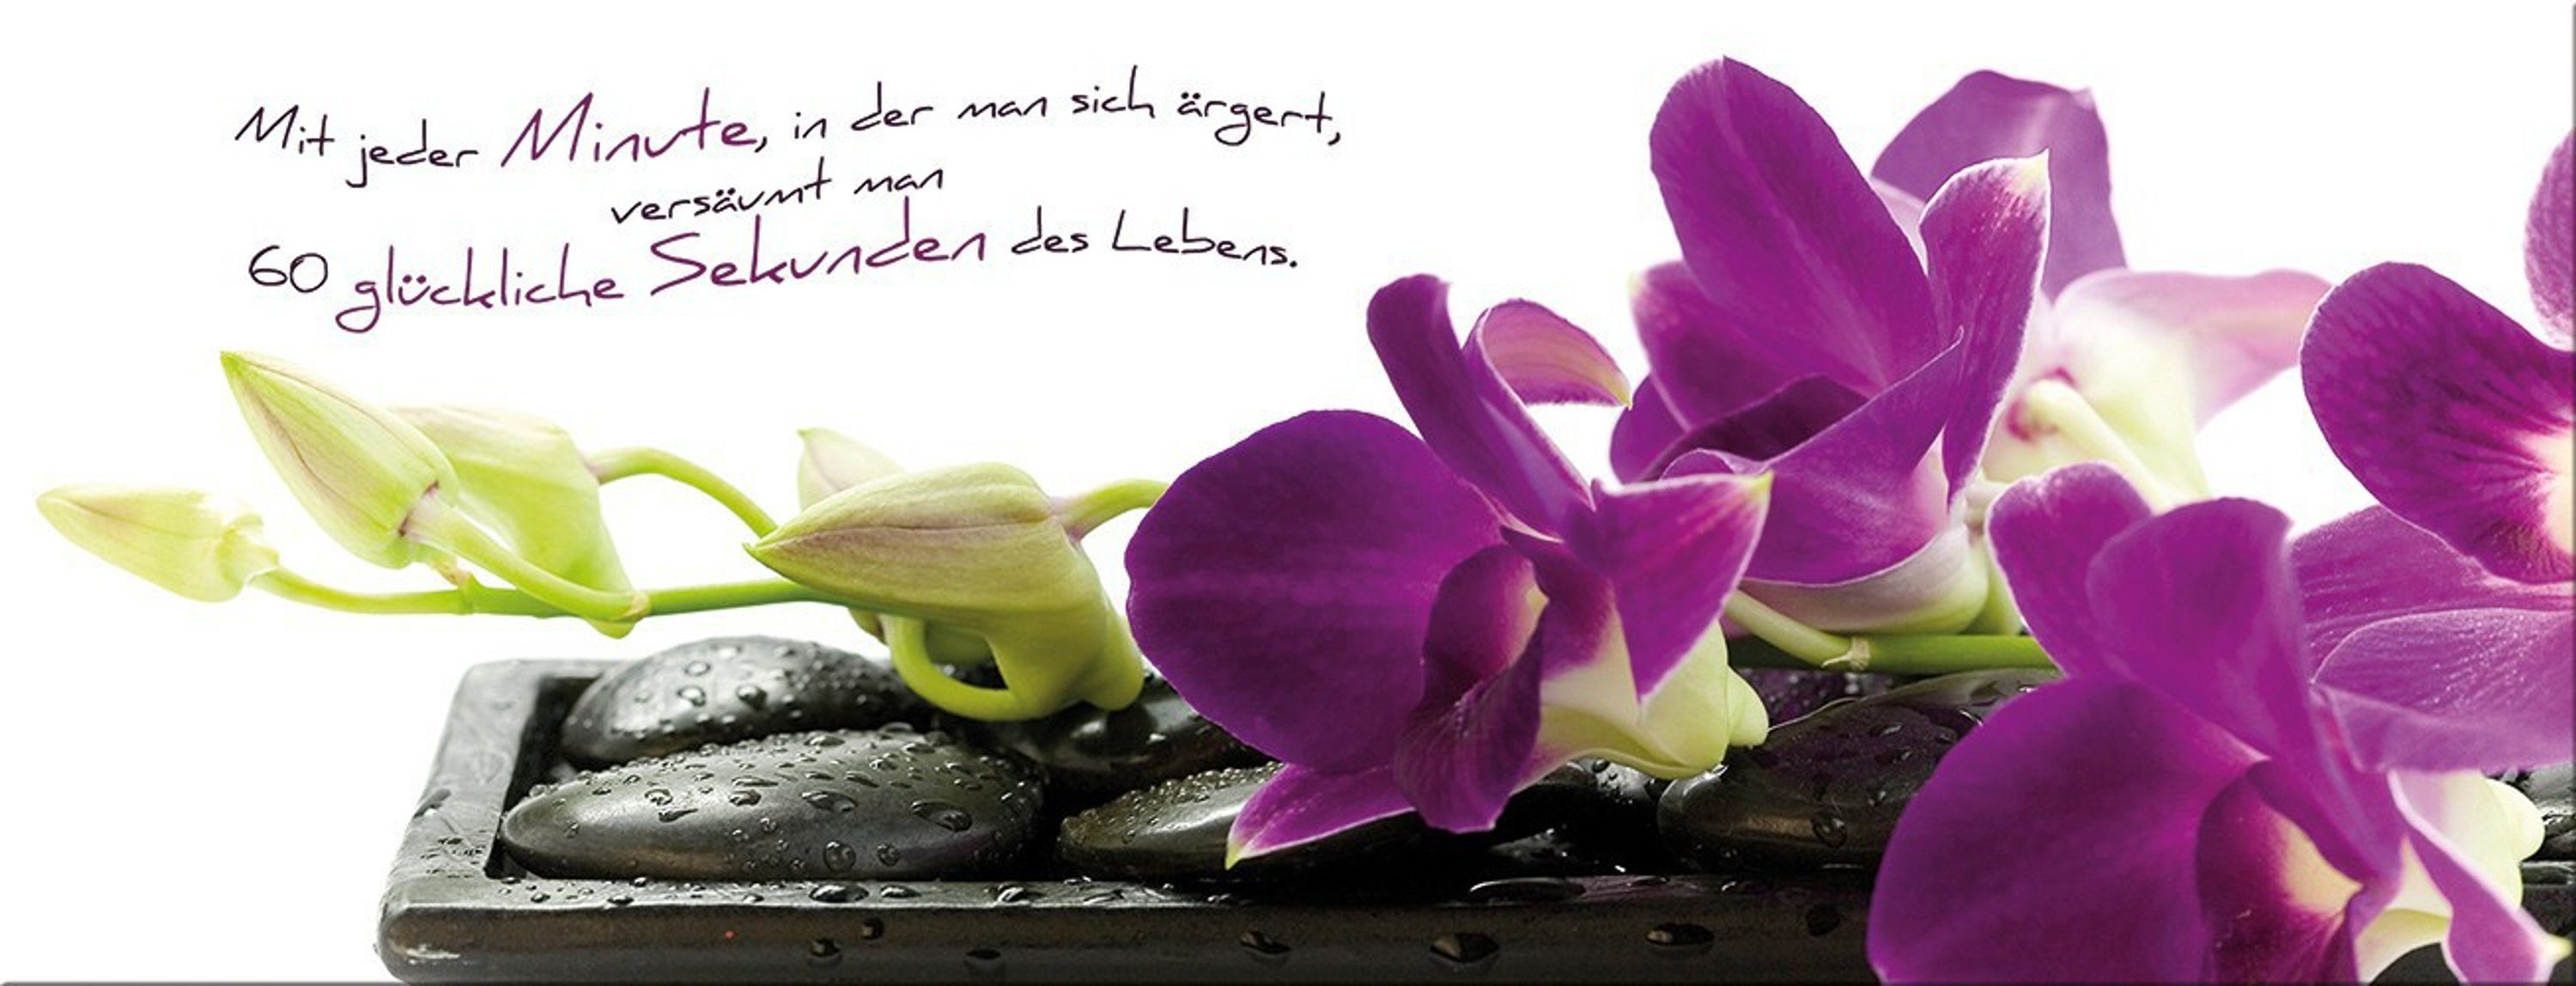 Sprüche: artissimo Glasbild Bild Orchidee Glasbild aus Lebensweisheit 80x30cm Glas Spruch Spa, Zen